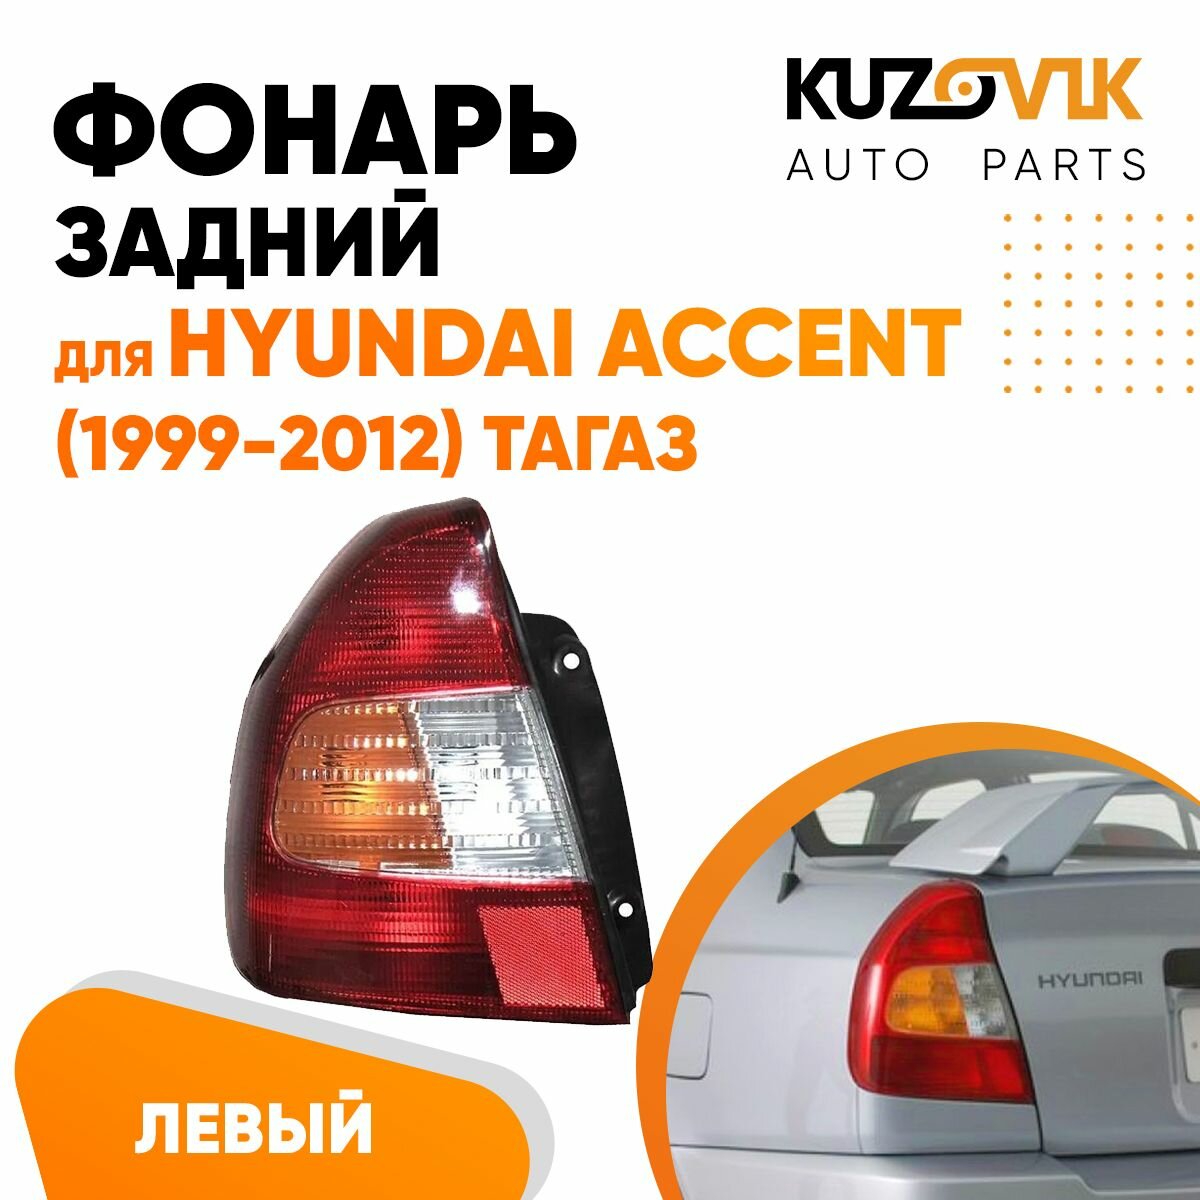 Фонарь задний левый для Хендай Акцент Тагаз Hyundai Accent (1999-2012), внешний, фара задняя